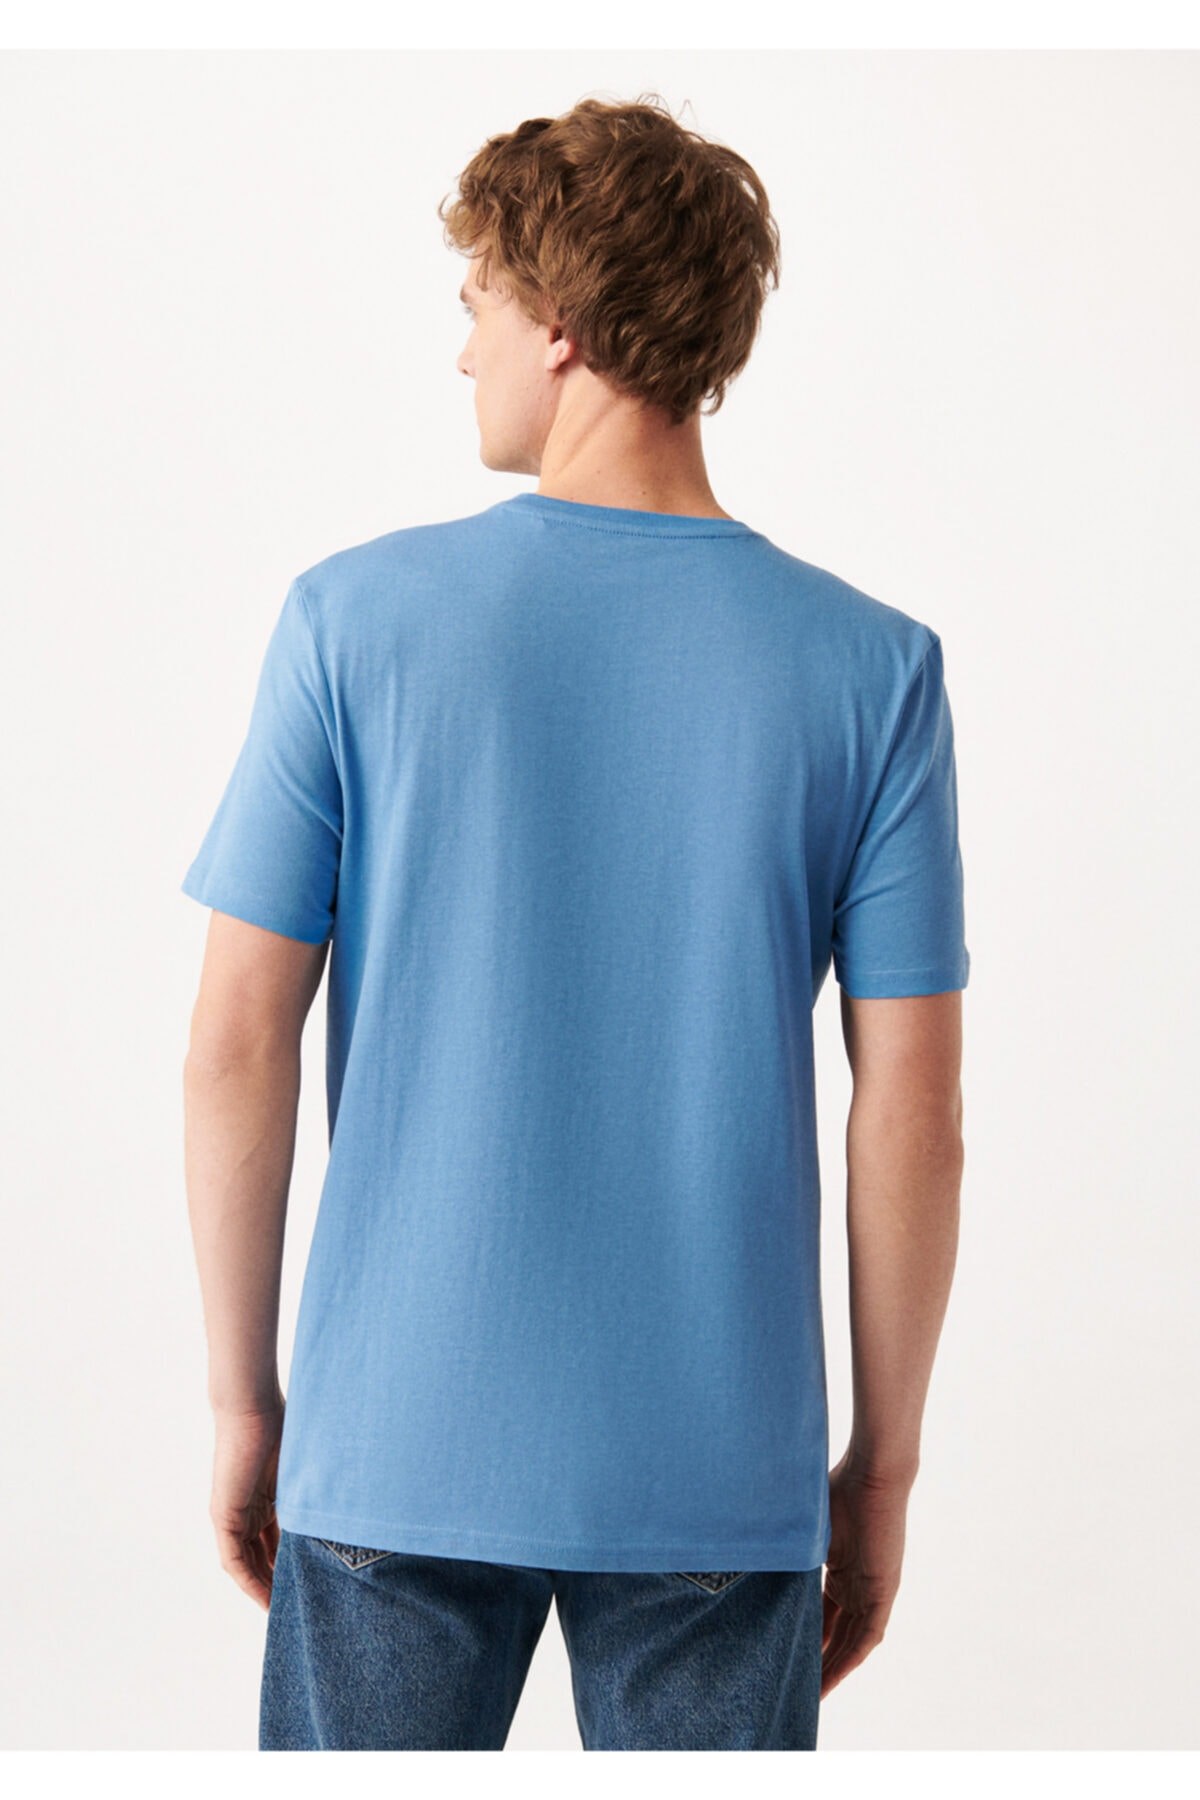 Mavi Jeans Erkek T-Shirt 0610165-80620 